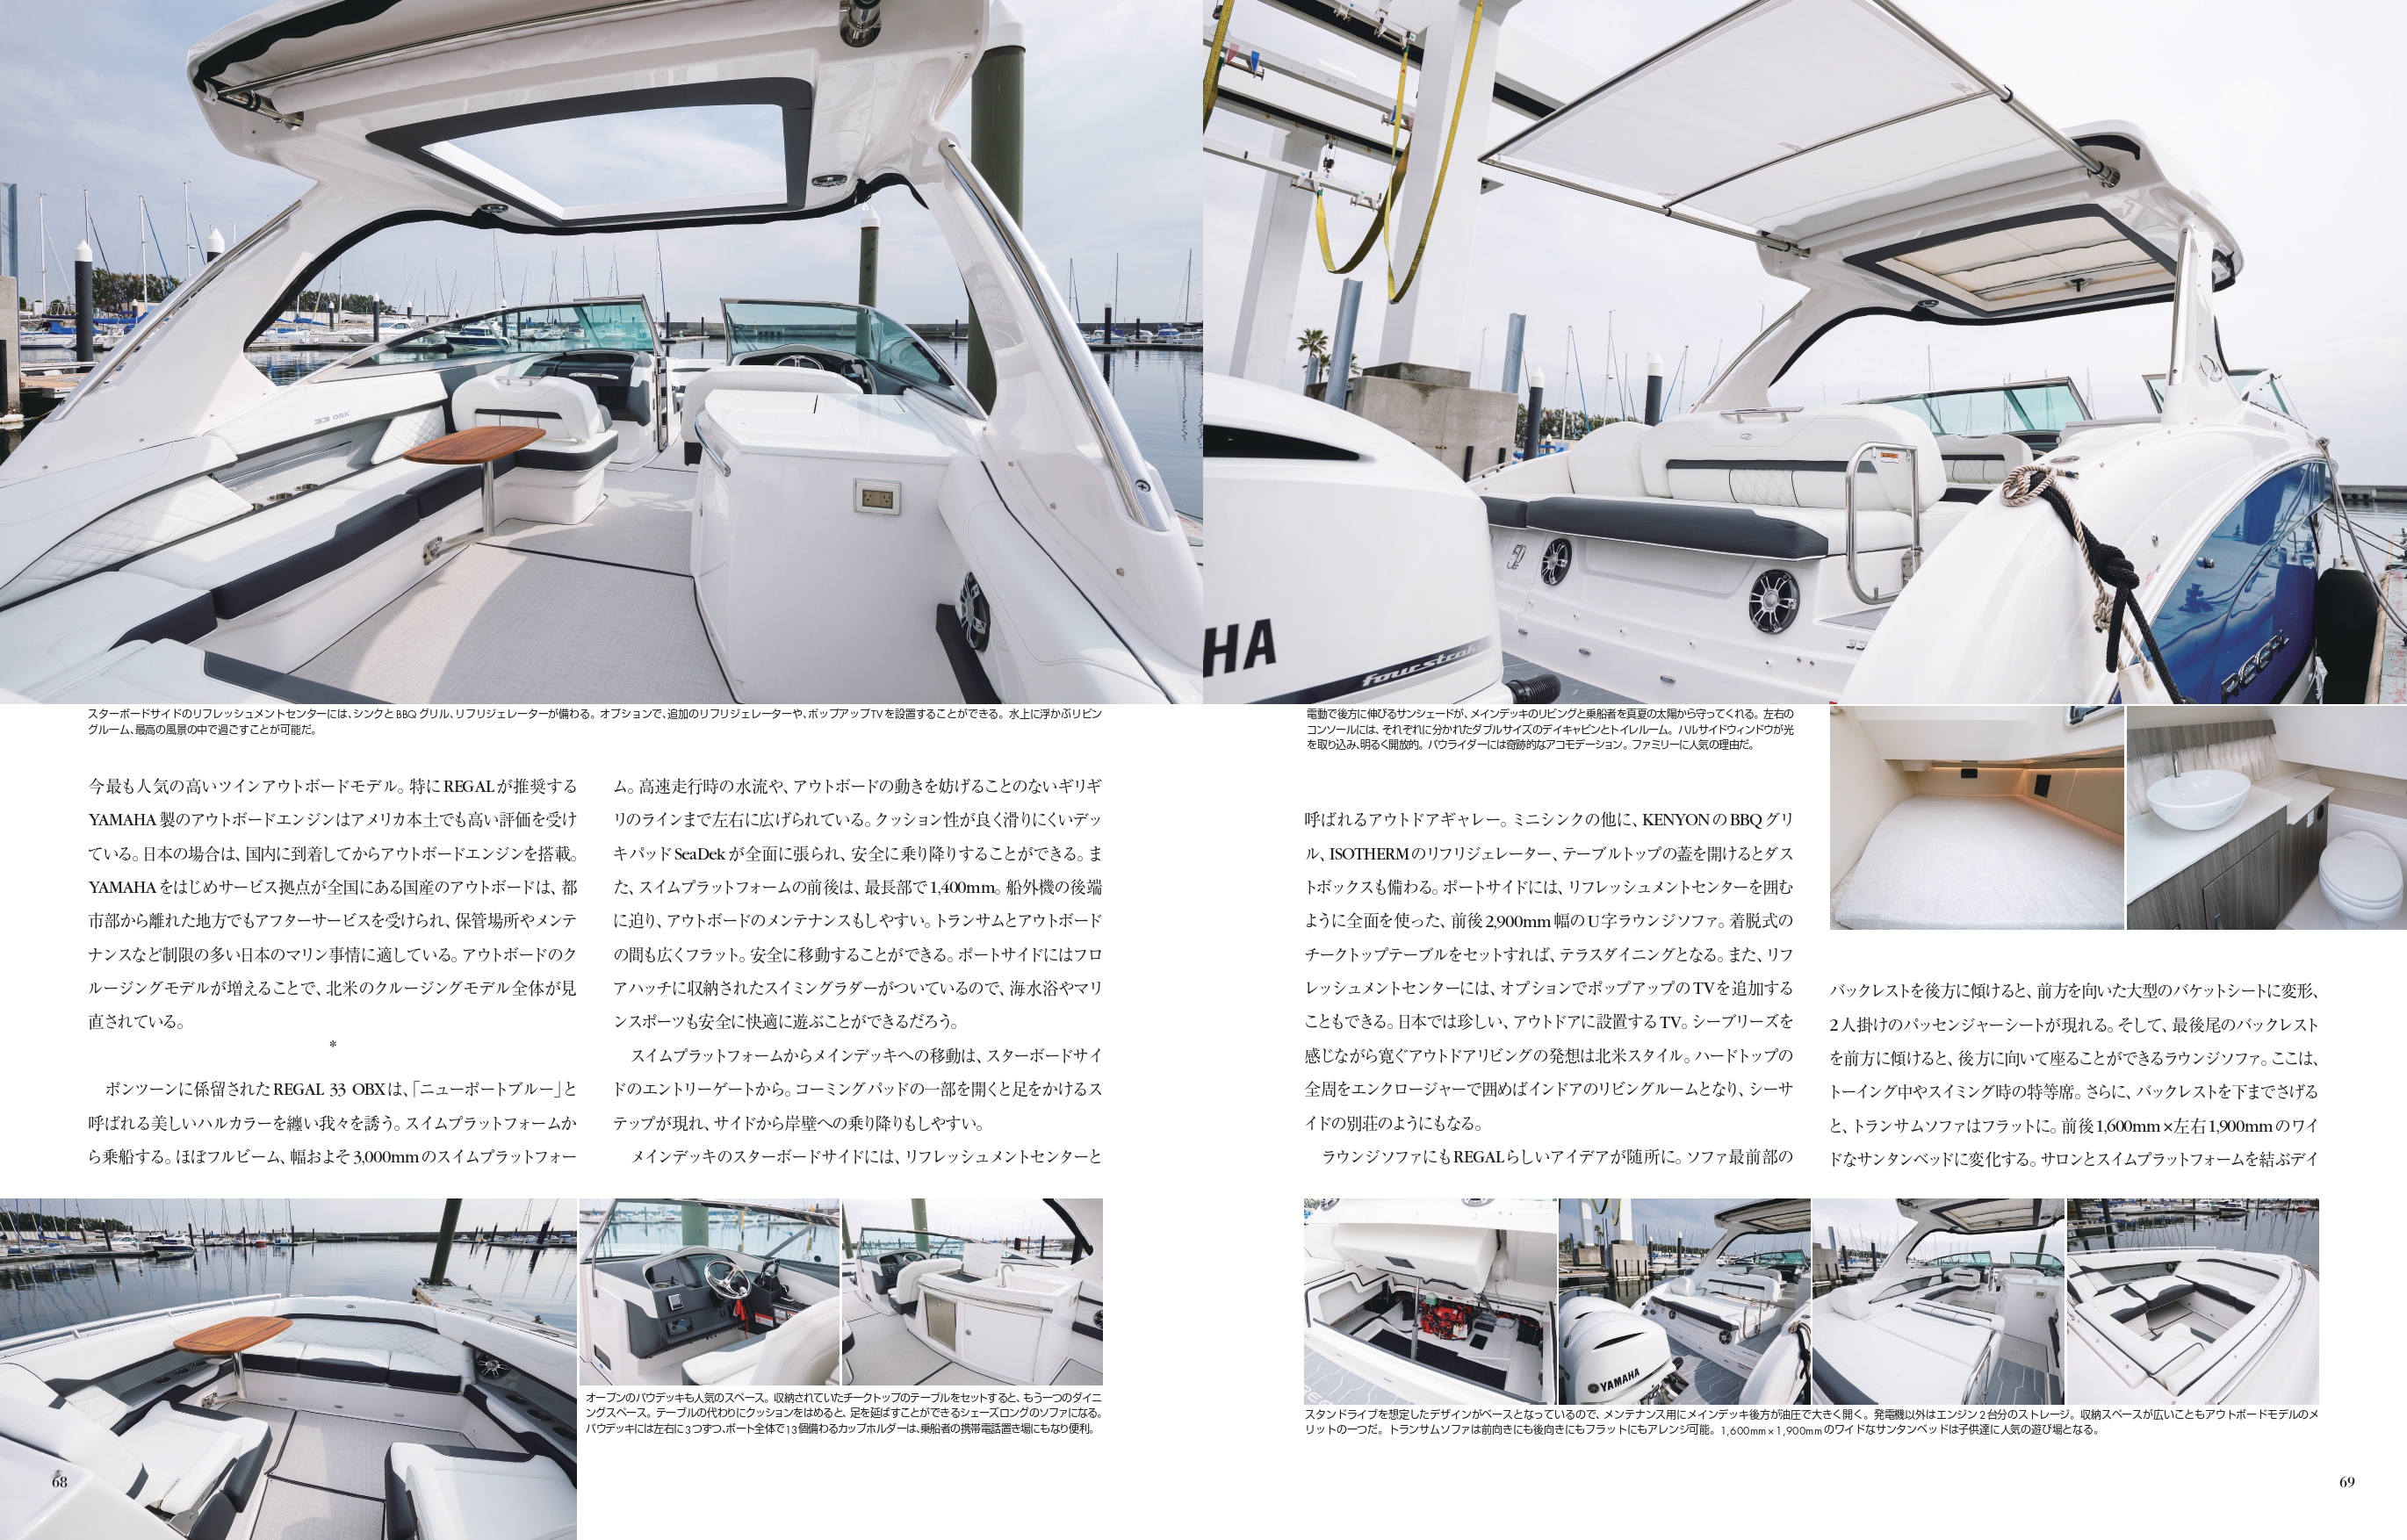 リーガルボート【REGAL 33OBX】パーフェクトボート誌 メディア掲載 